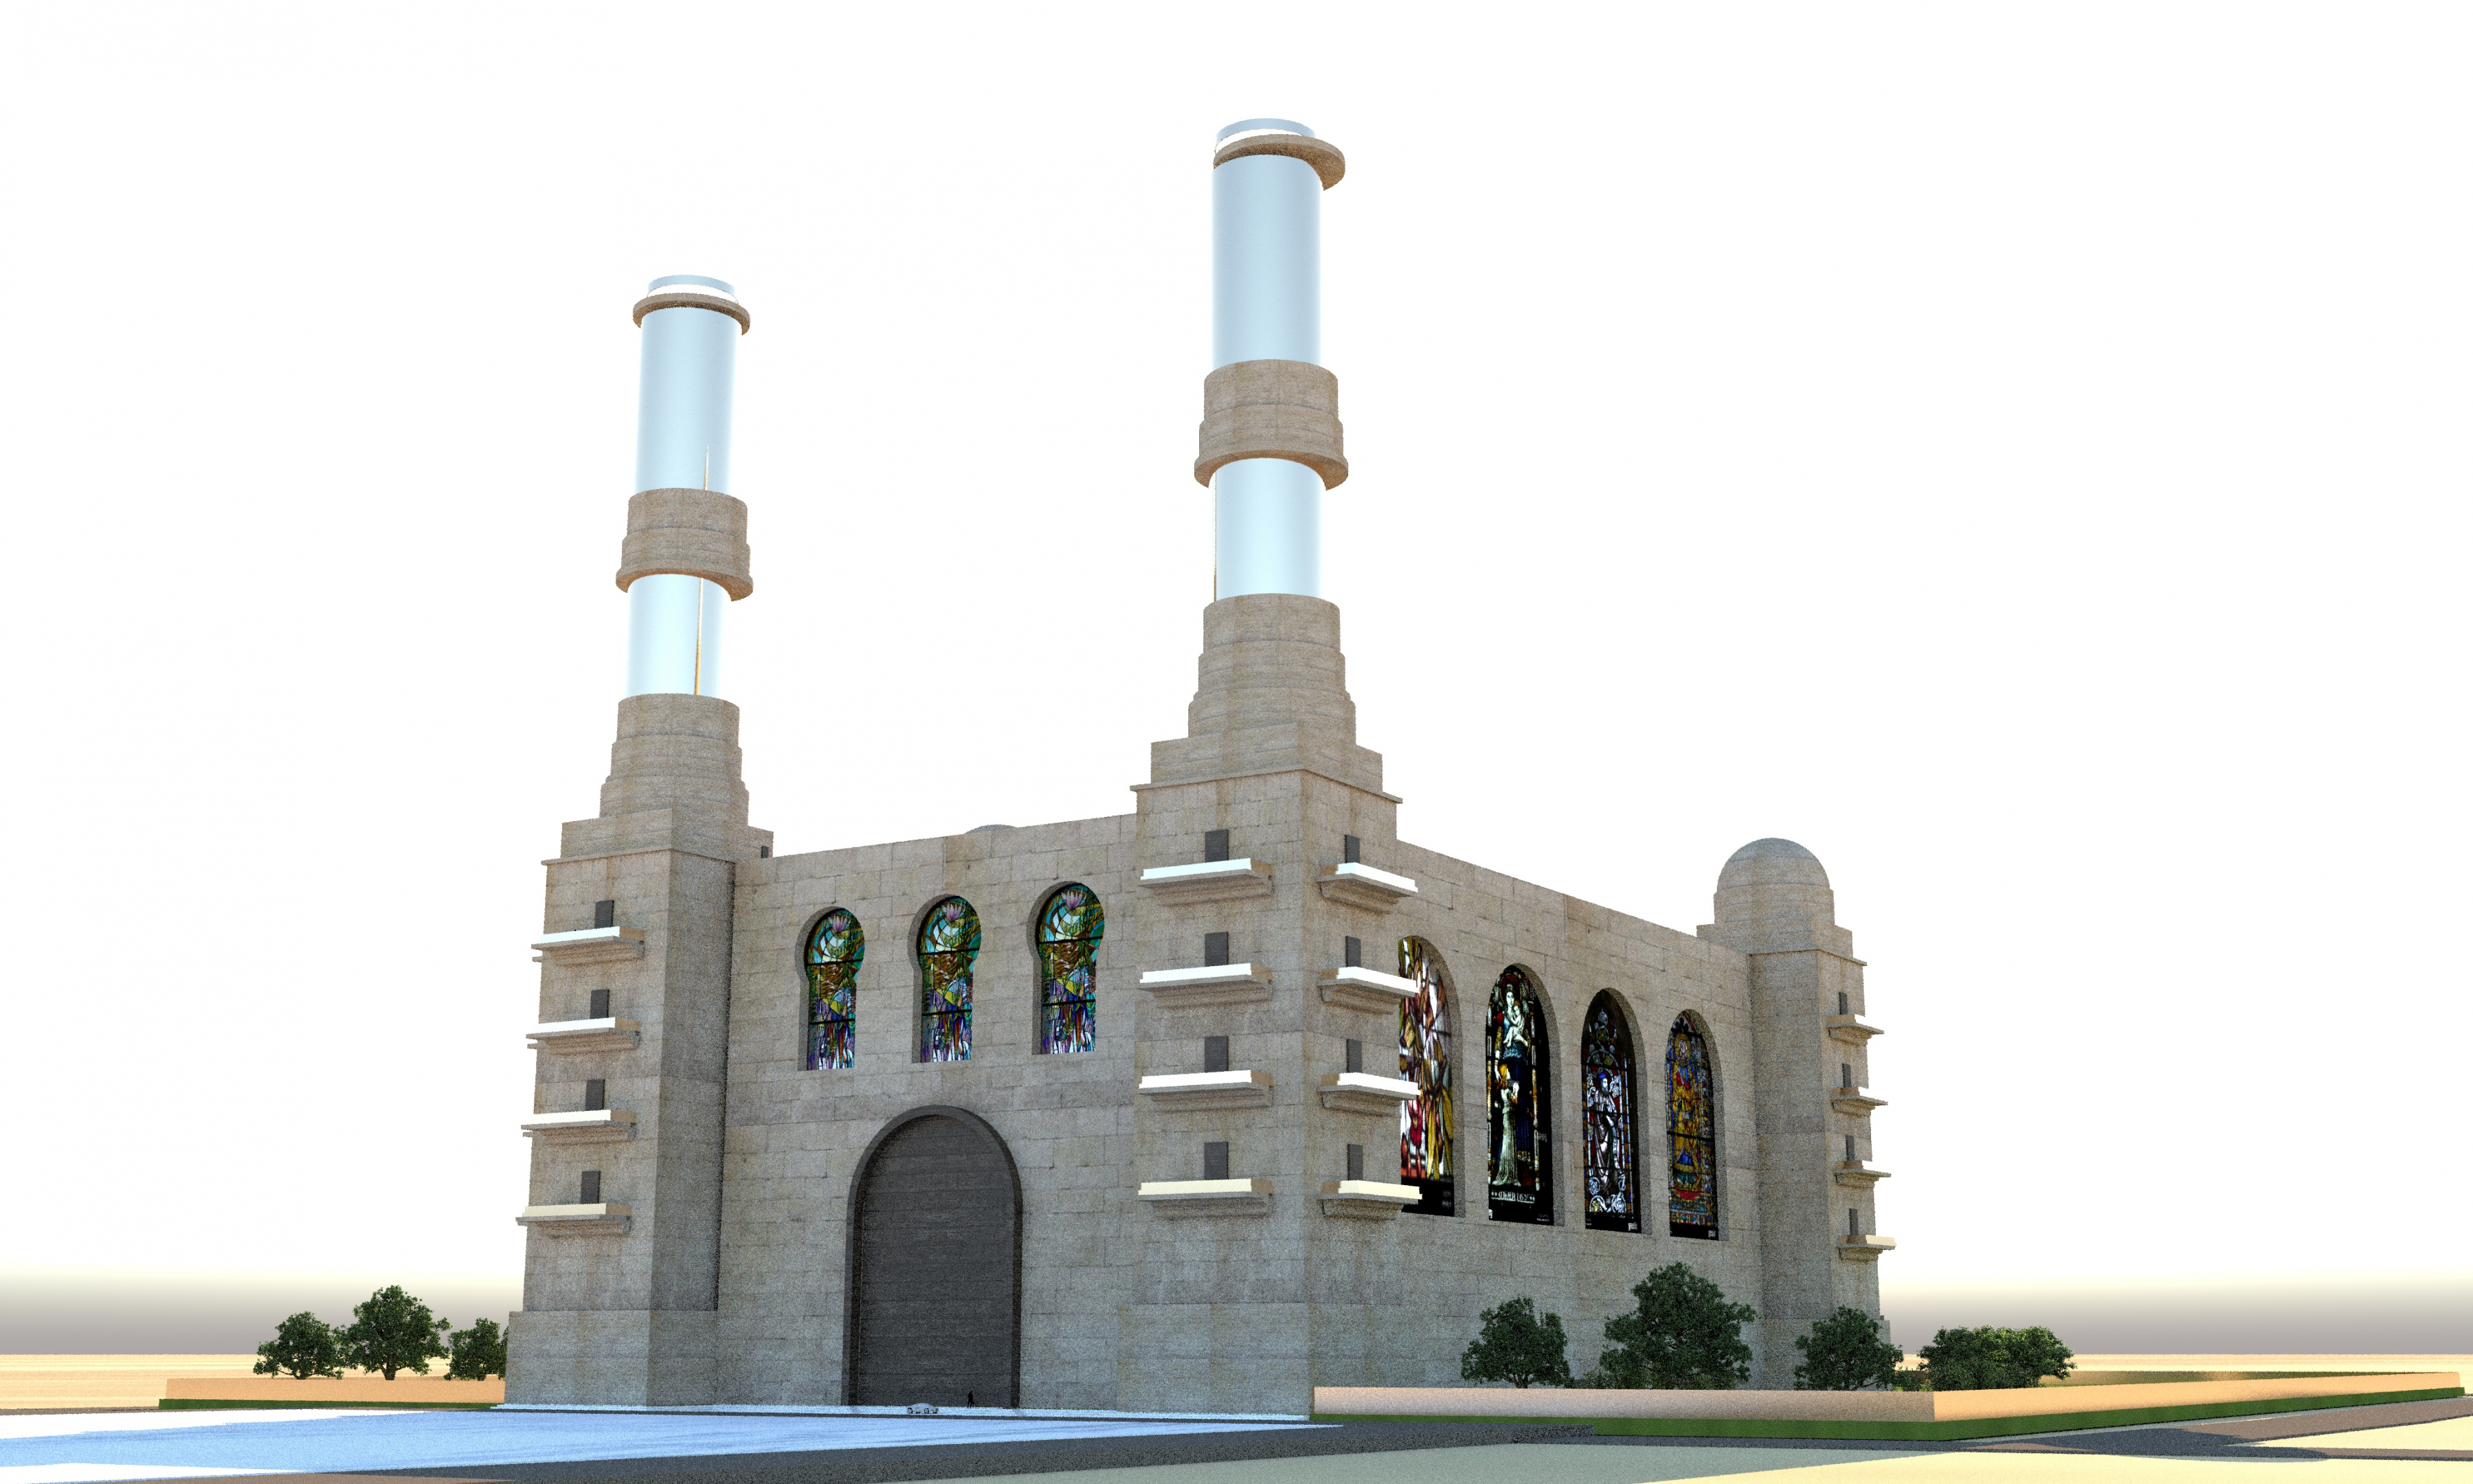 imagen de Catedral ficticia con las torres de oro en AutoCAD vray 3.0